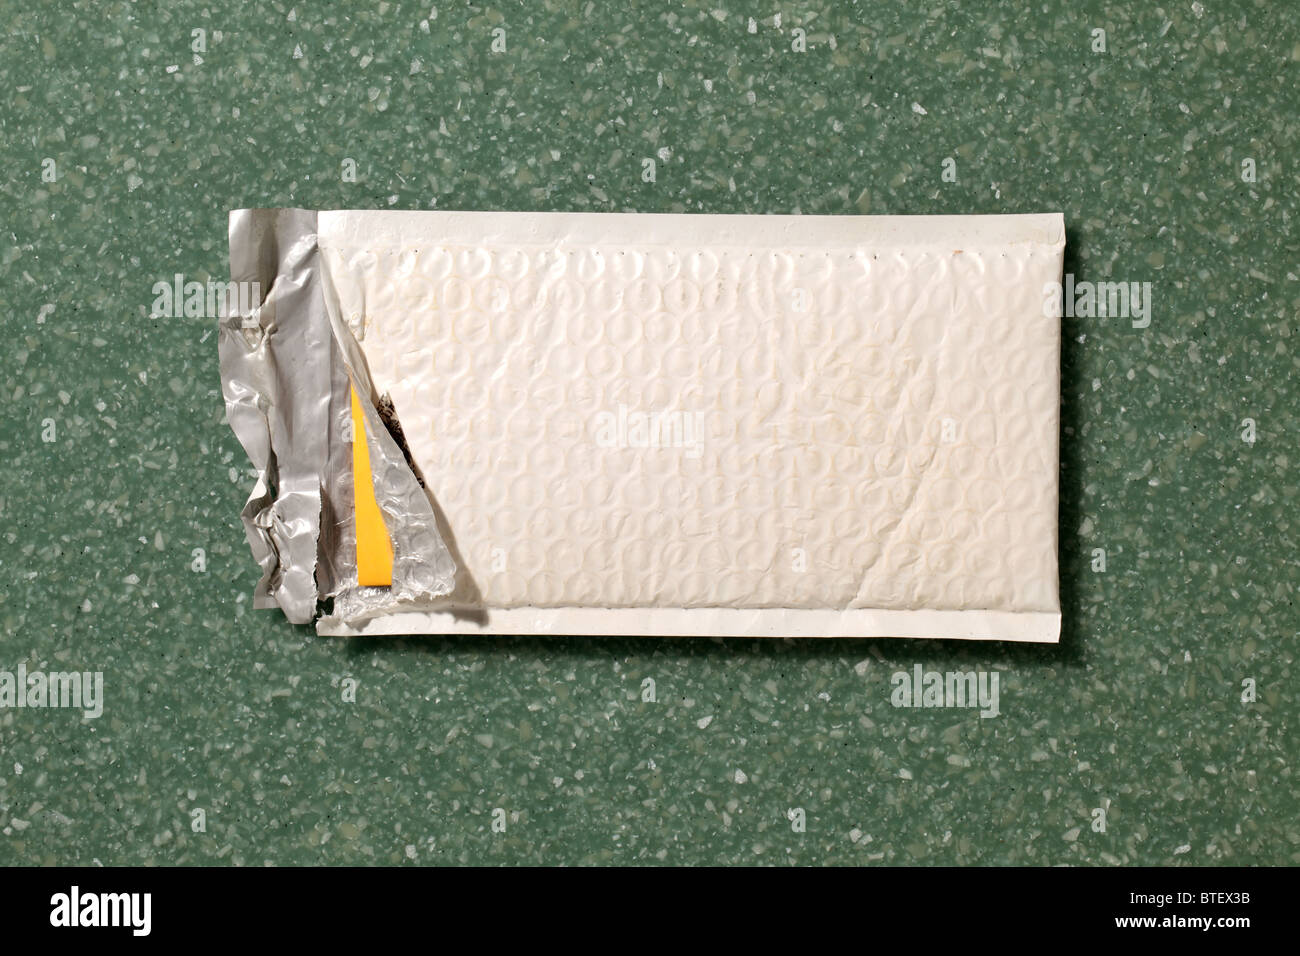 Eine gebrauchte mailing Postumschlag aufgerissen. Grün gesprenkelt Counter Top Hintergrund Stockfoto